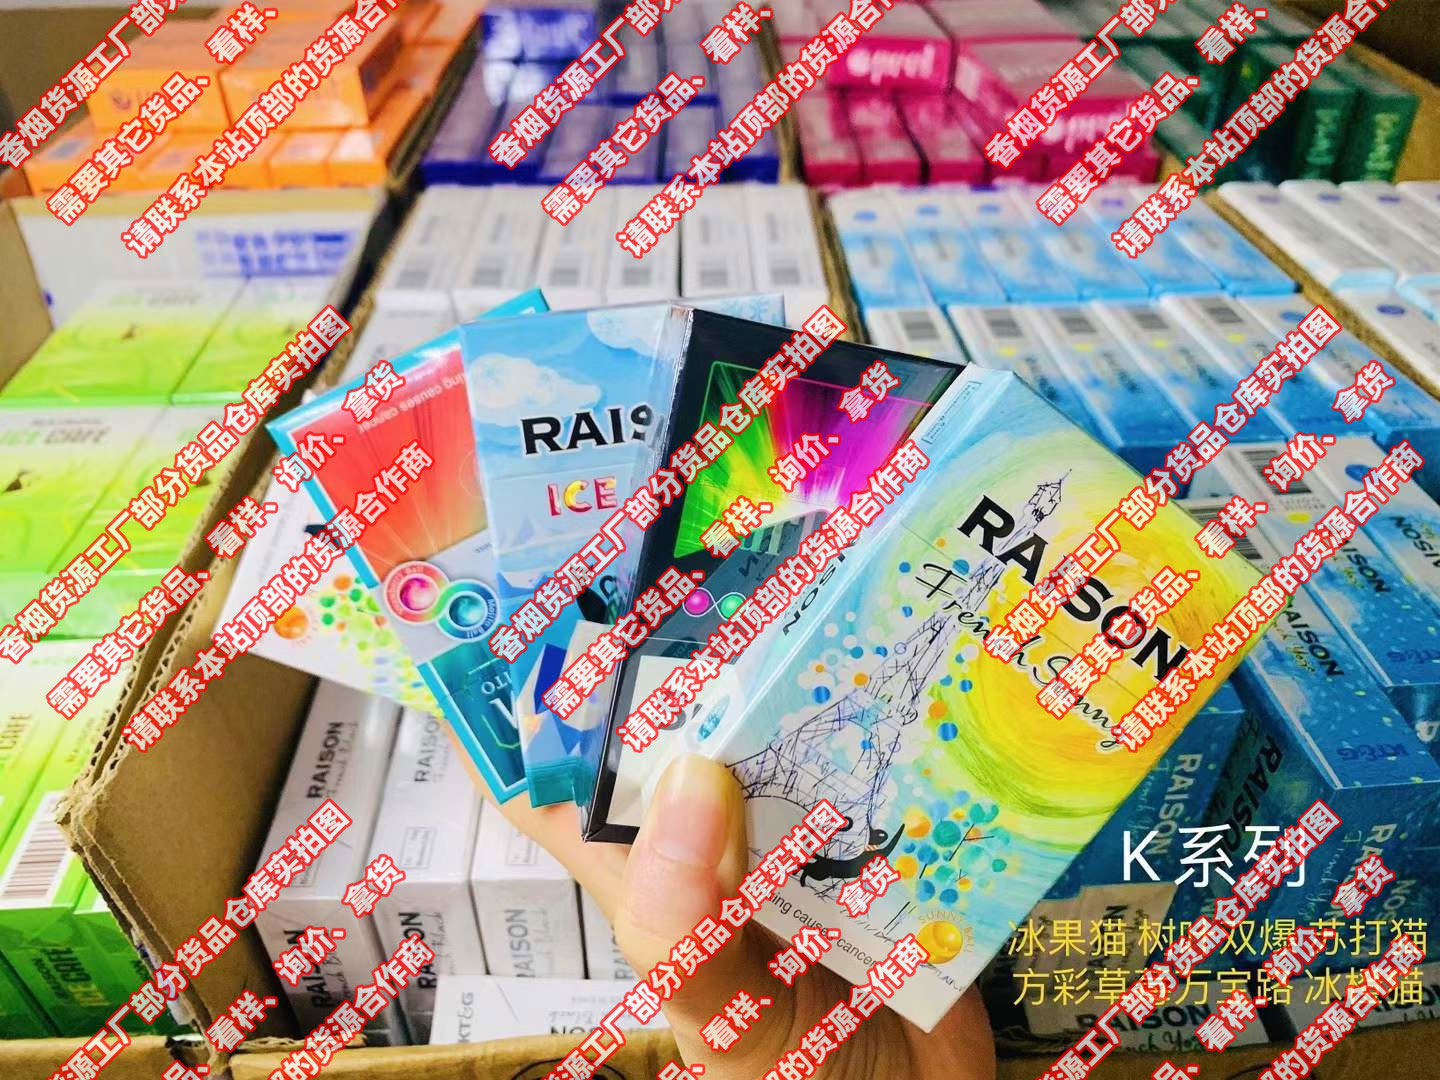 微信推荐几个买卖越南烟外烟国烟免税烟爆珠烟的微商微信